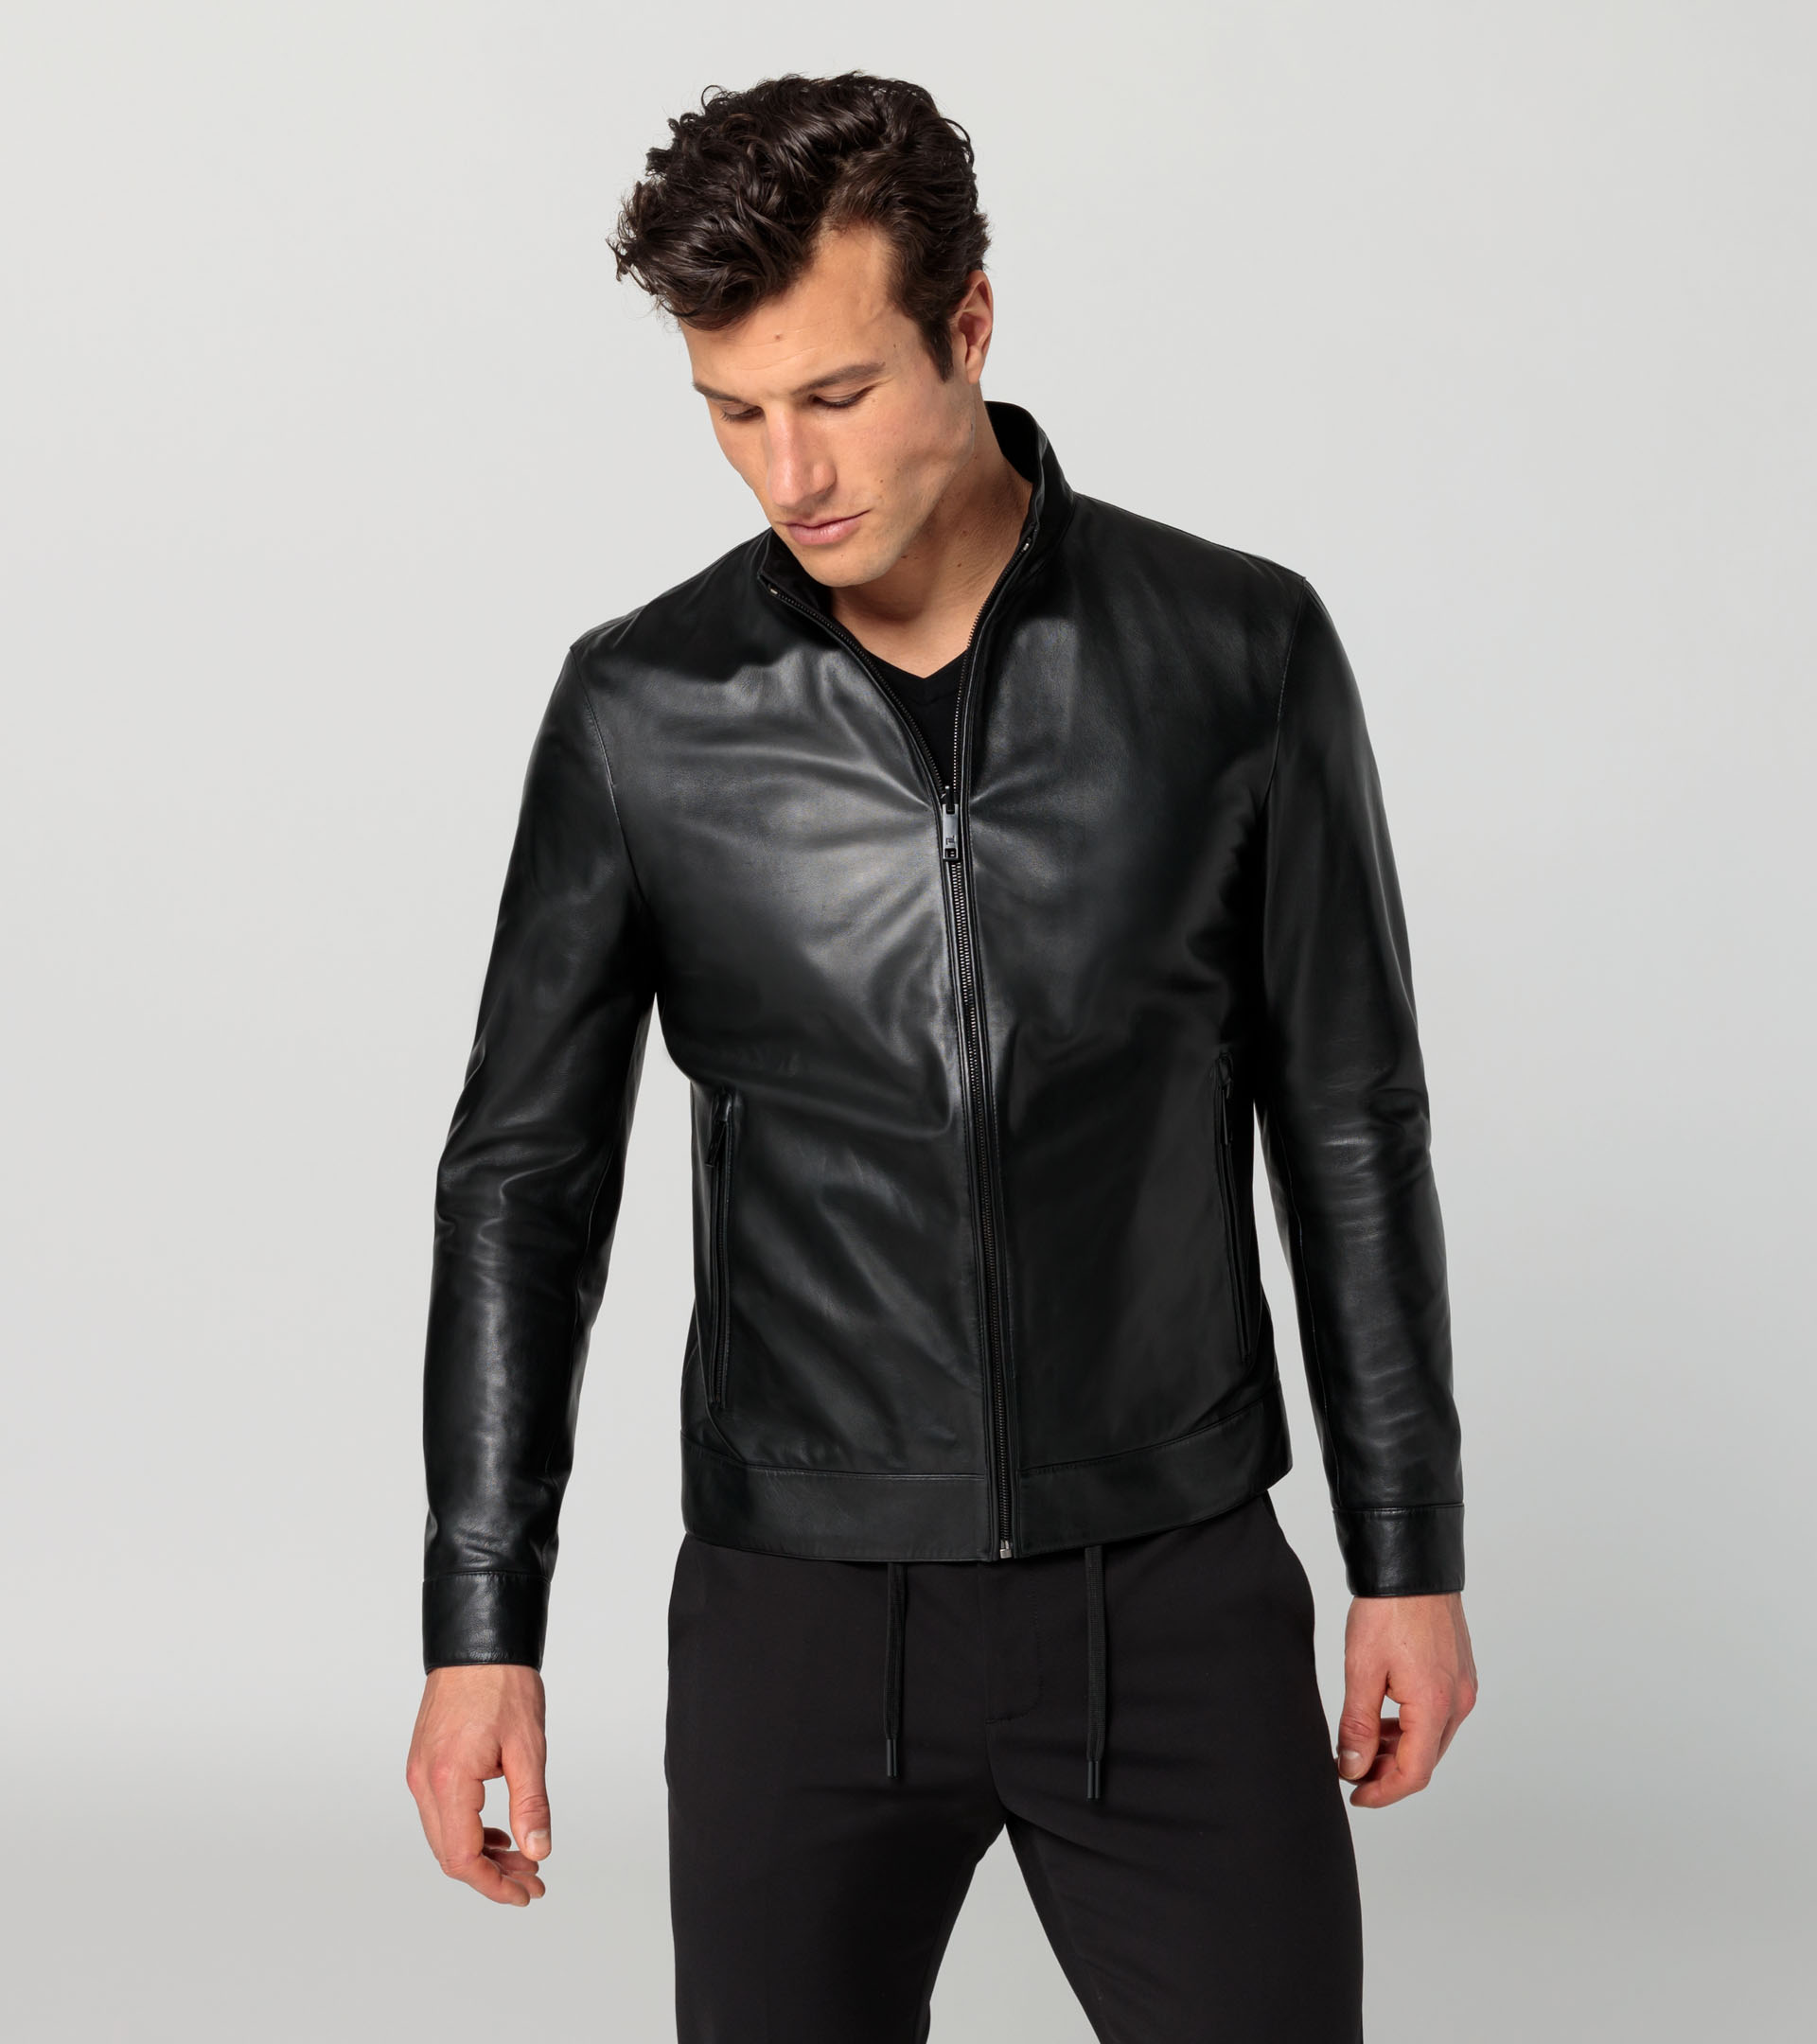 Athleisure reverse leather jacket - Designer Men's Jackets & Coats